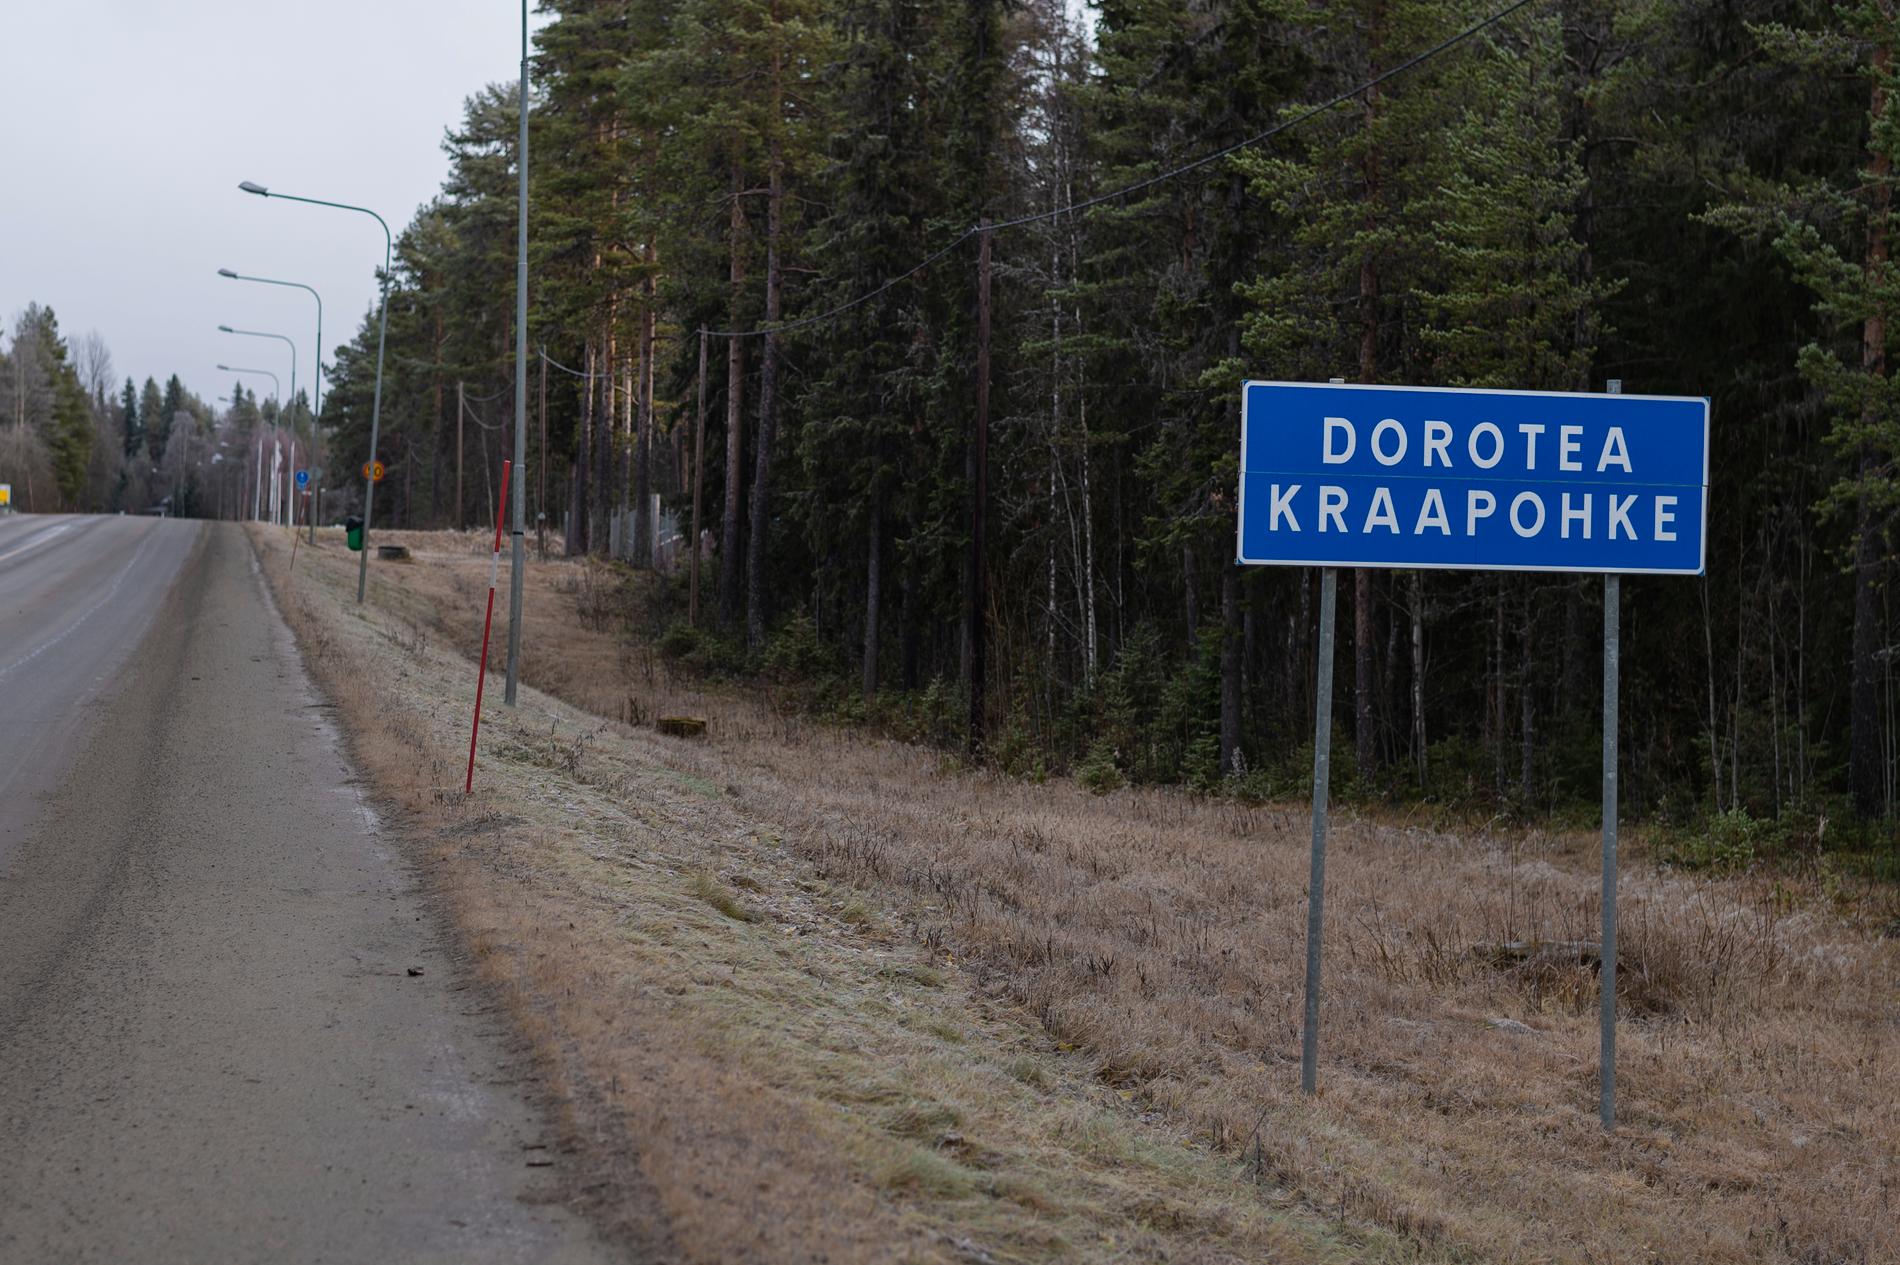 Dorotea har fått sitt namn efter Gustaf IV Adolfs drottning. Det samiska namnet Kraapohke betyder ”instängd sjö”.